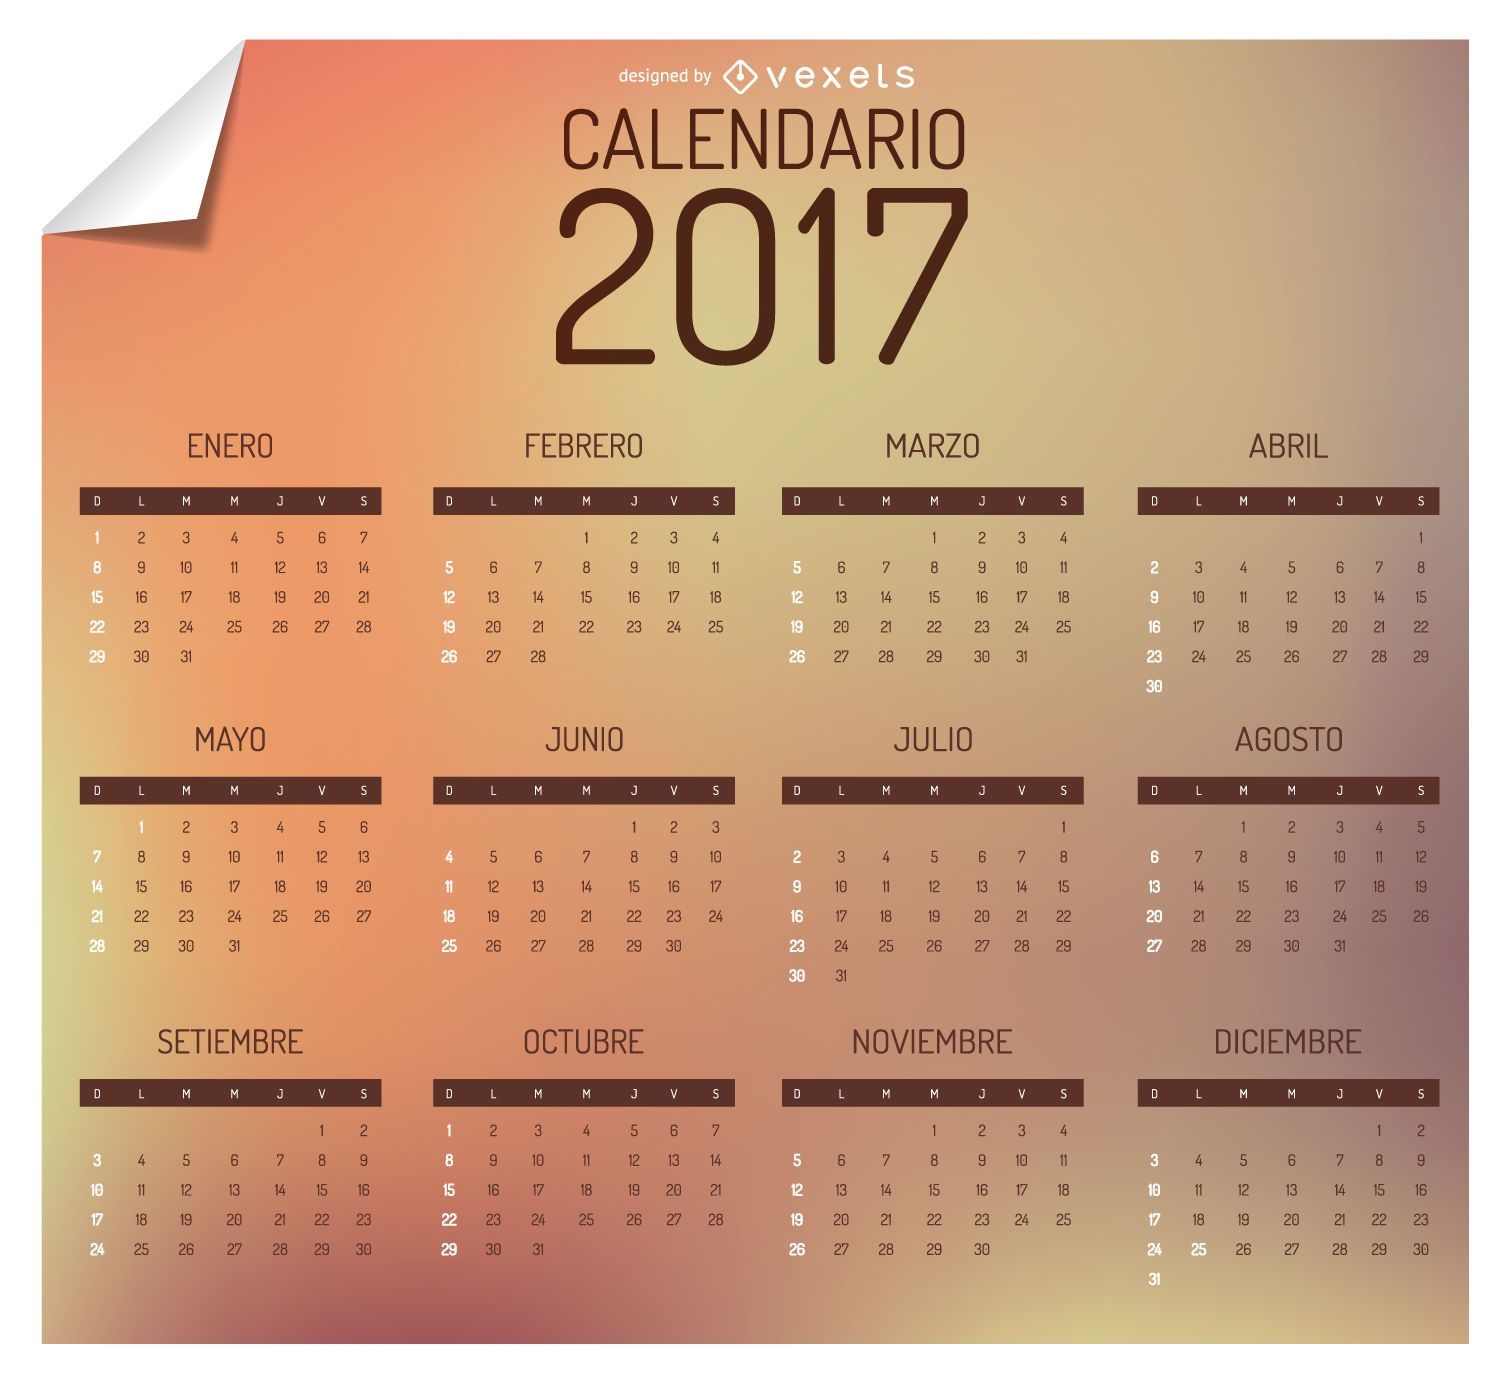 Calendário 2017 em espanhol